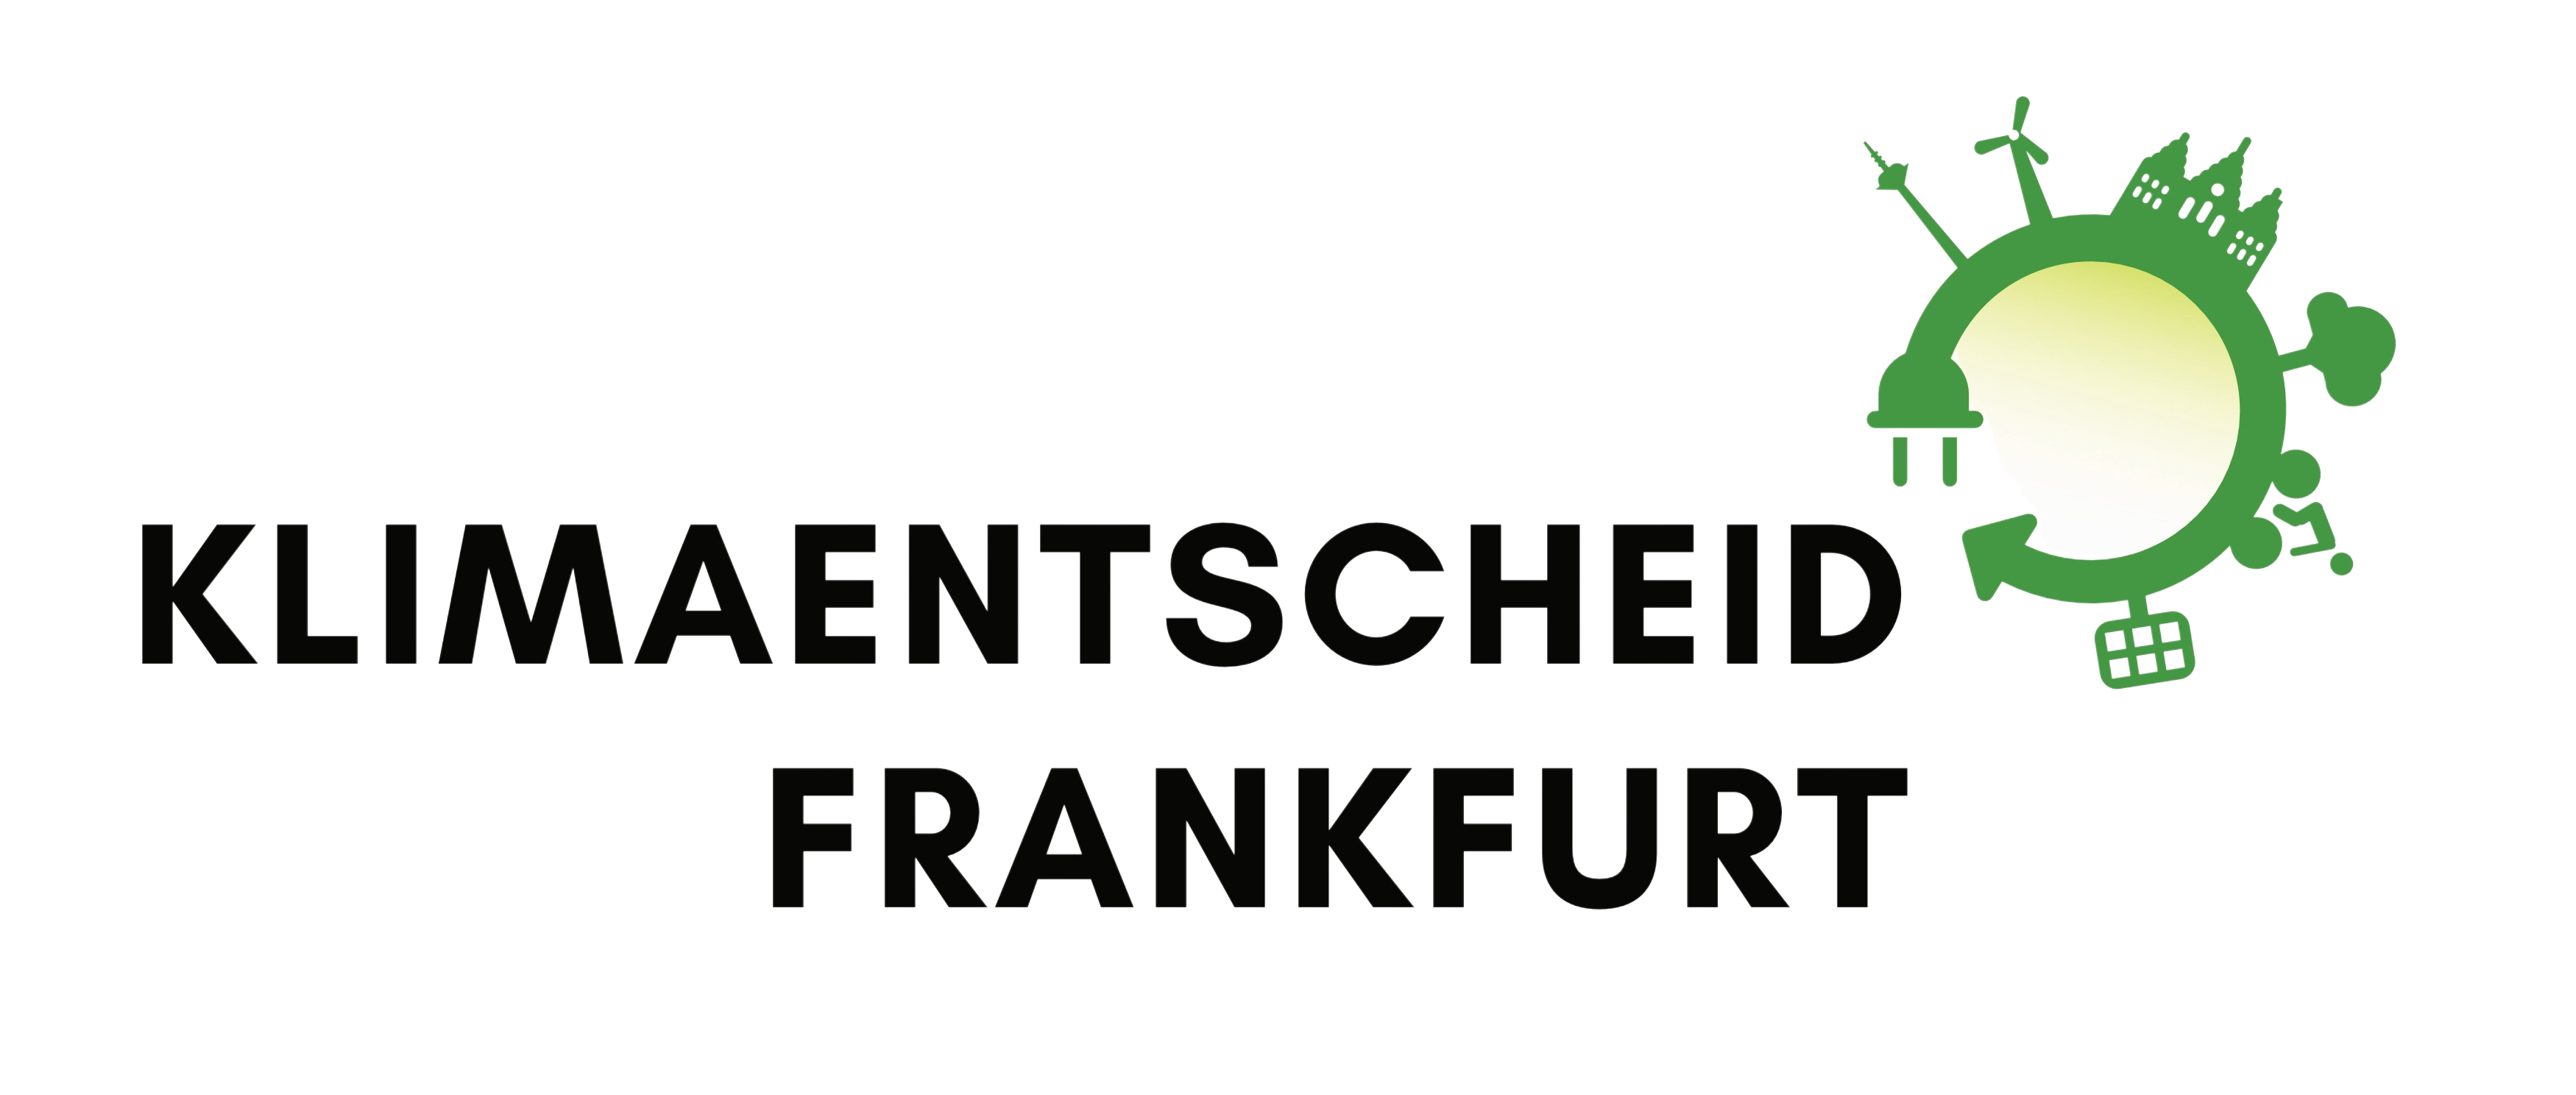 Logo des Klimaentscheid Frankfurt. Der Bürgerentscheid will Frankfurt klimaneutral, und gleichzeitig lebenswerter machen. Deswegen zeigt das grün-gelbe Logo Erneuerbare Energien, Stadtbäume sowie ein Fahrrad und den Römer. Die Details erkennt man nur, wenn man näher hinsieht, oder das Logo vergrößert.